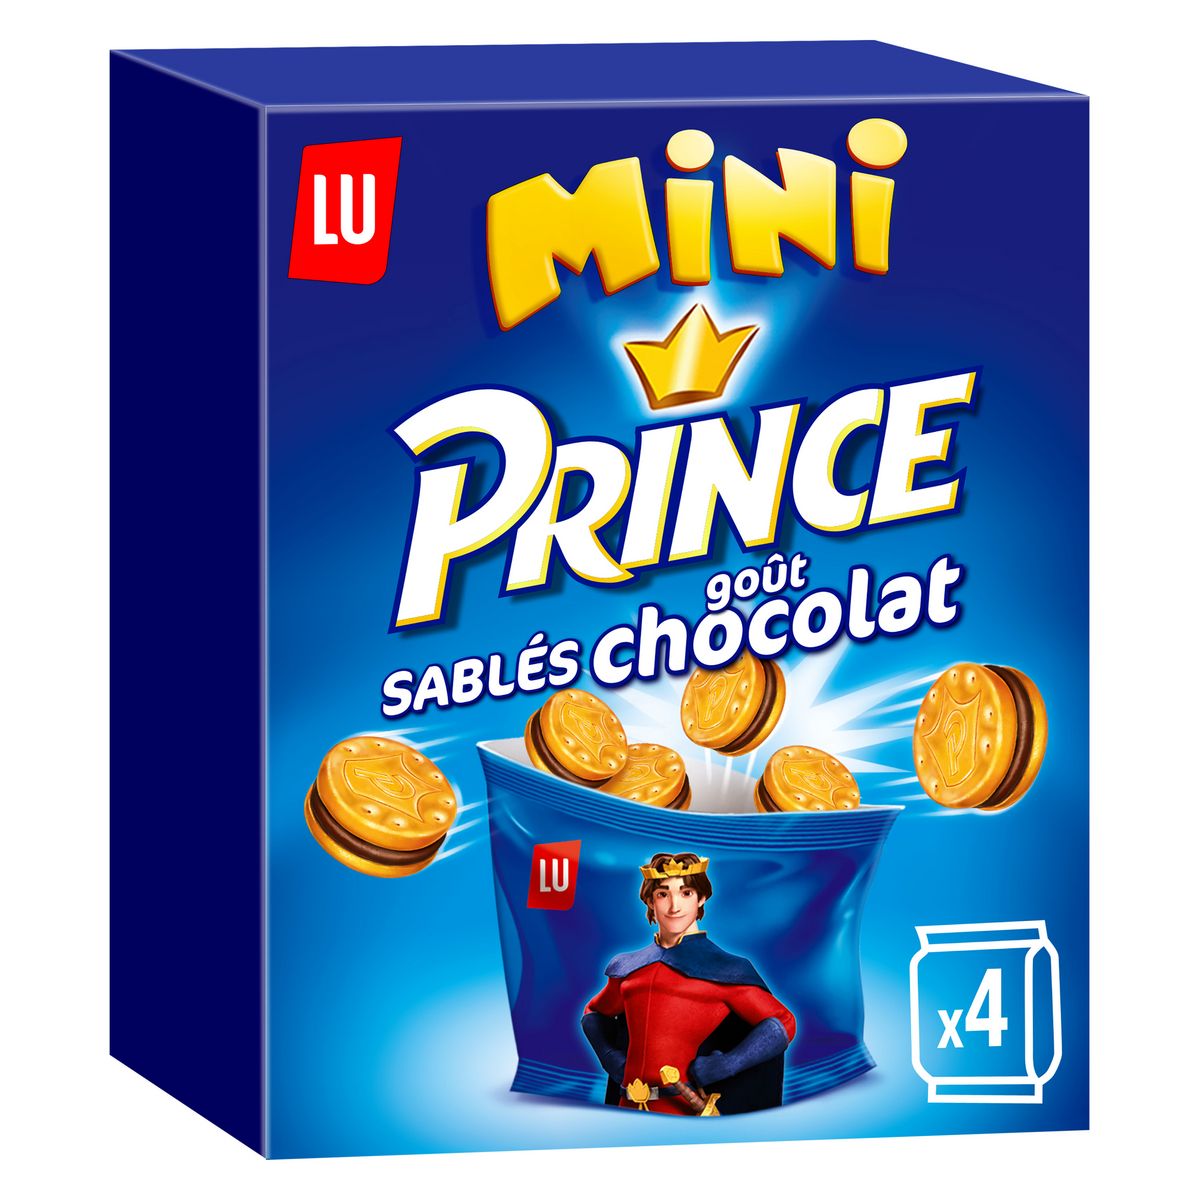 PRINCE Mini sablés au chocolat 4 sachets 160g